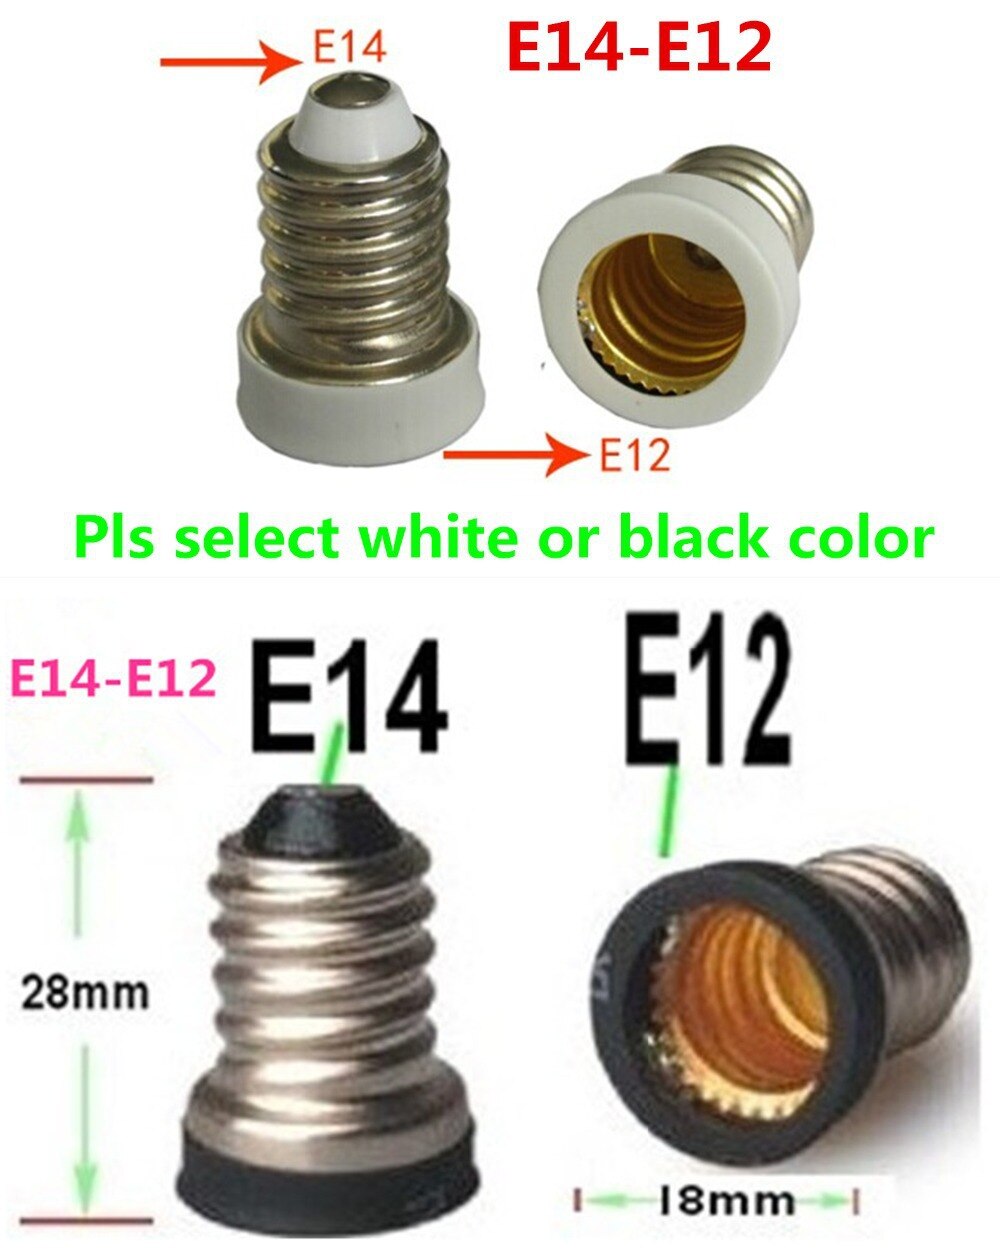 100 Stks/partij, Led Corn Lamp Adapter E14 naar E12 Adapter Converter E14-E12 Lamphouder Converter Led licht Gebruik,